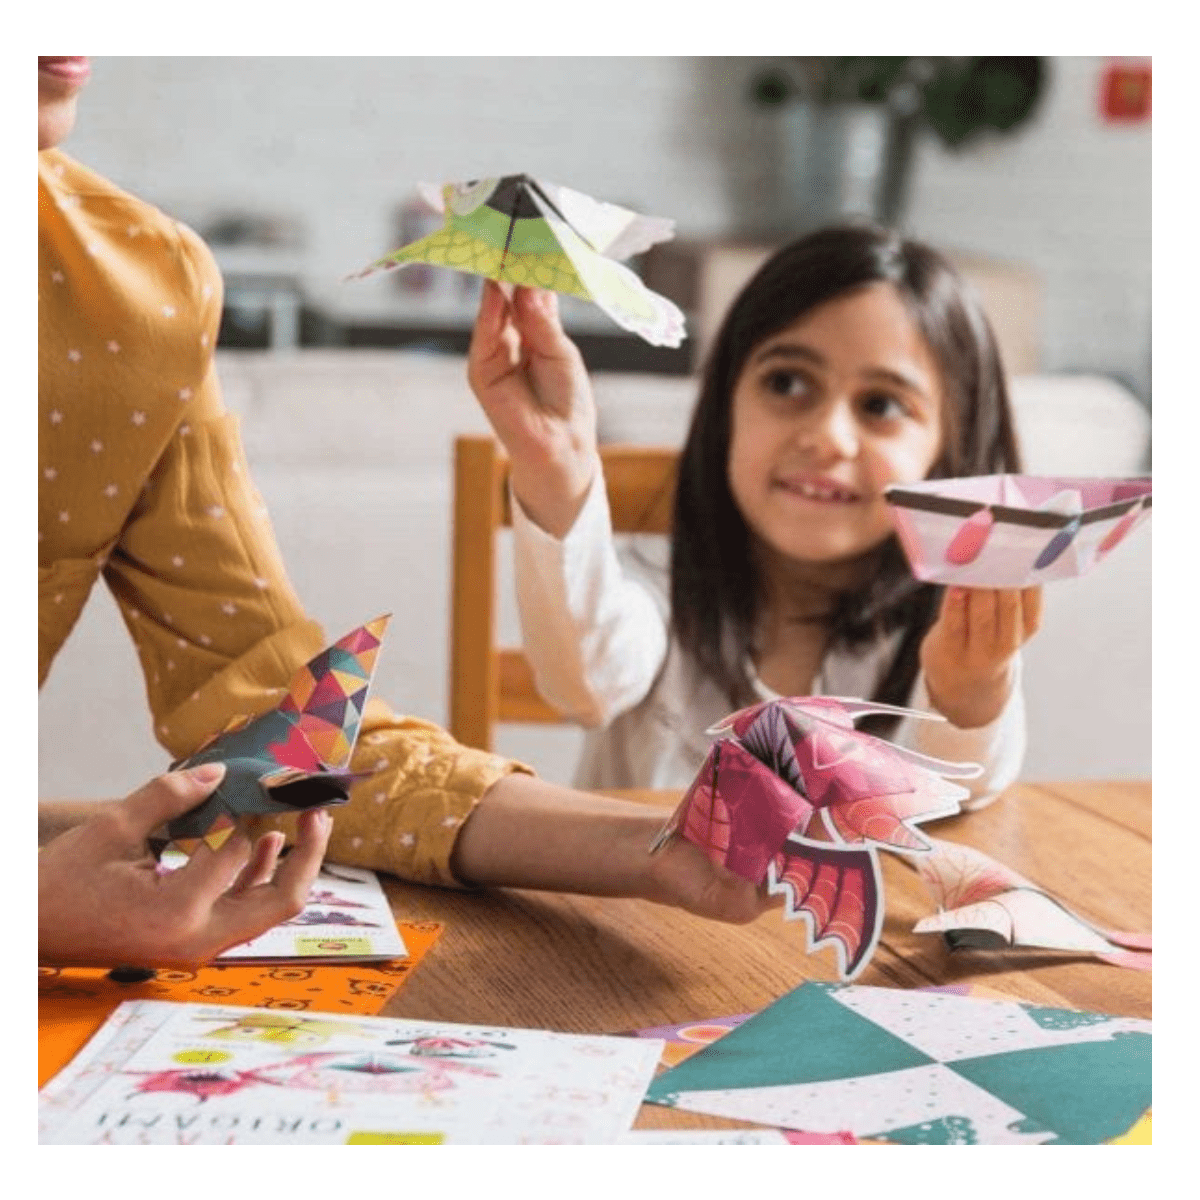 Easy Origami: Cuccioli | L’arte degli origami non è mai stata così divertente!